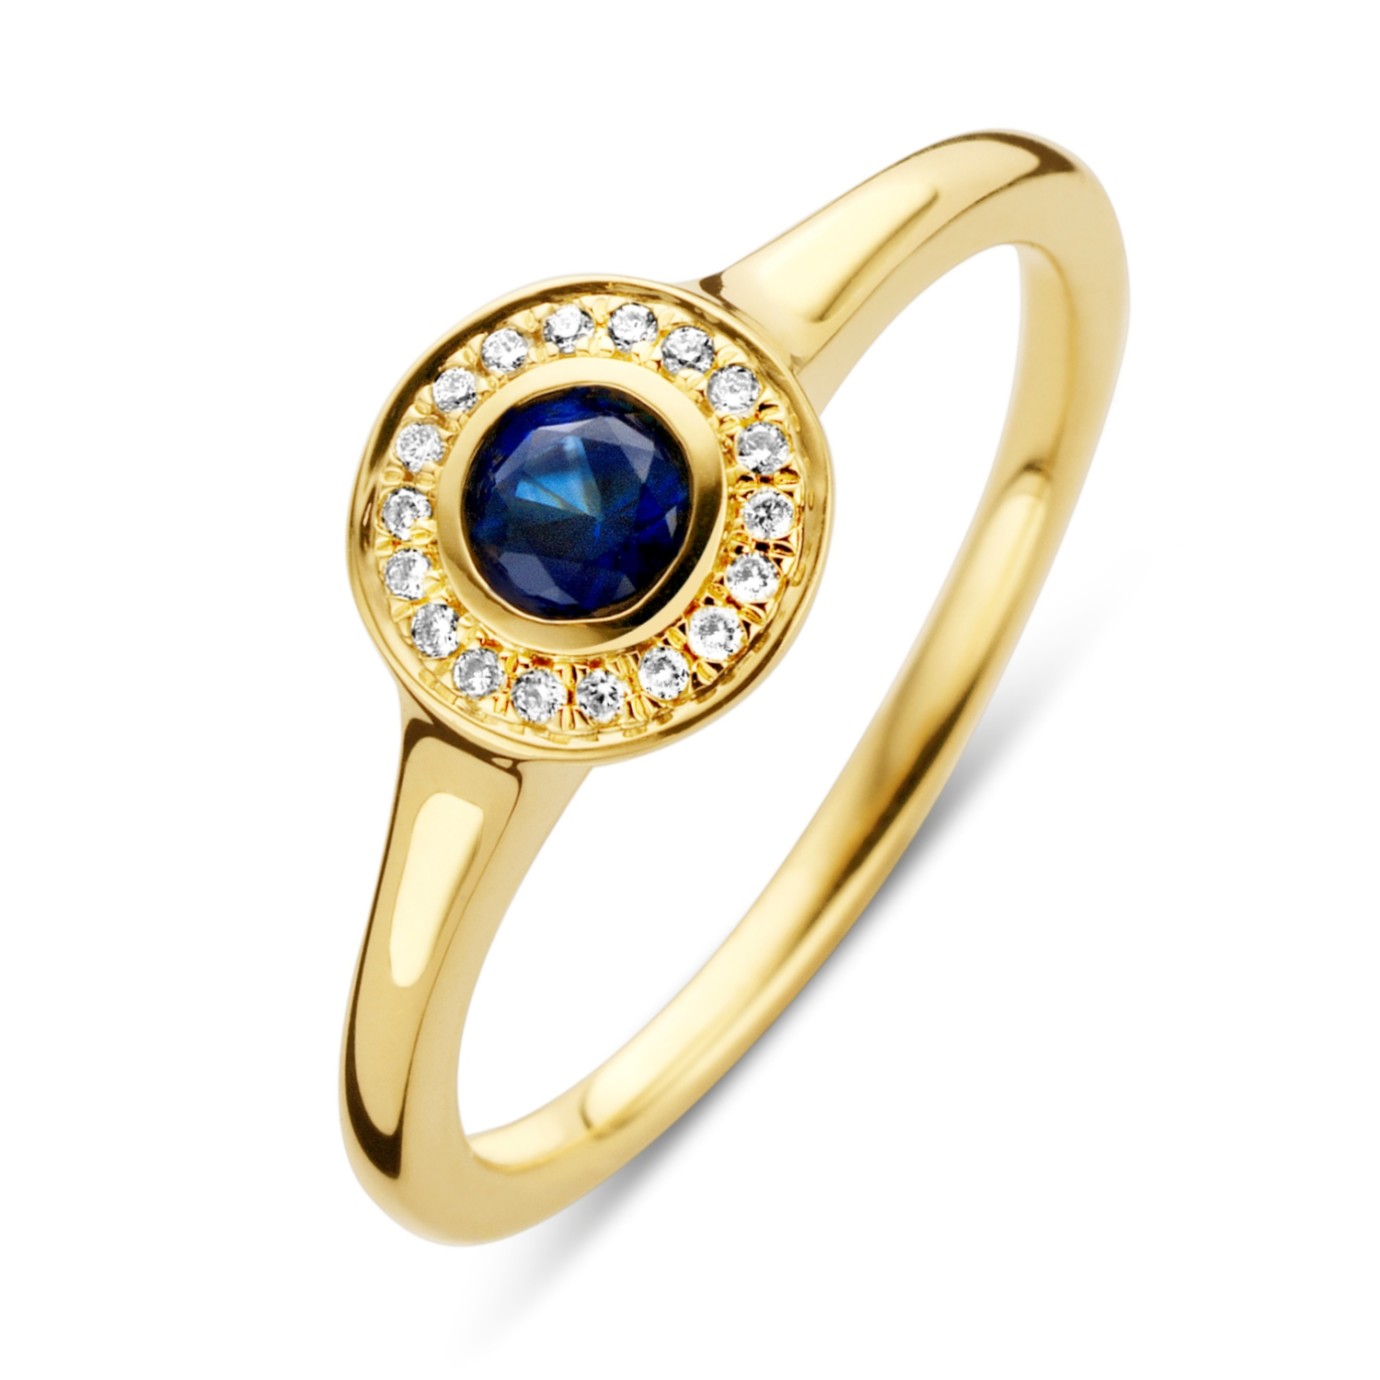 Verwonderend 14 karaat geelgouden ring met blauw saffier en diamant - Kopmels NJ-36